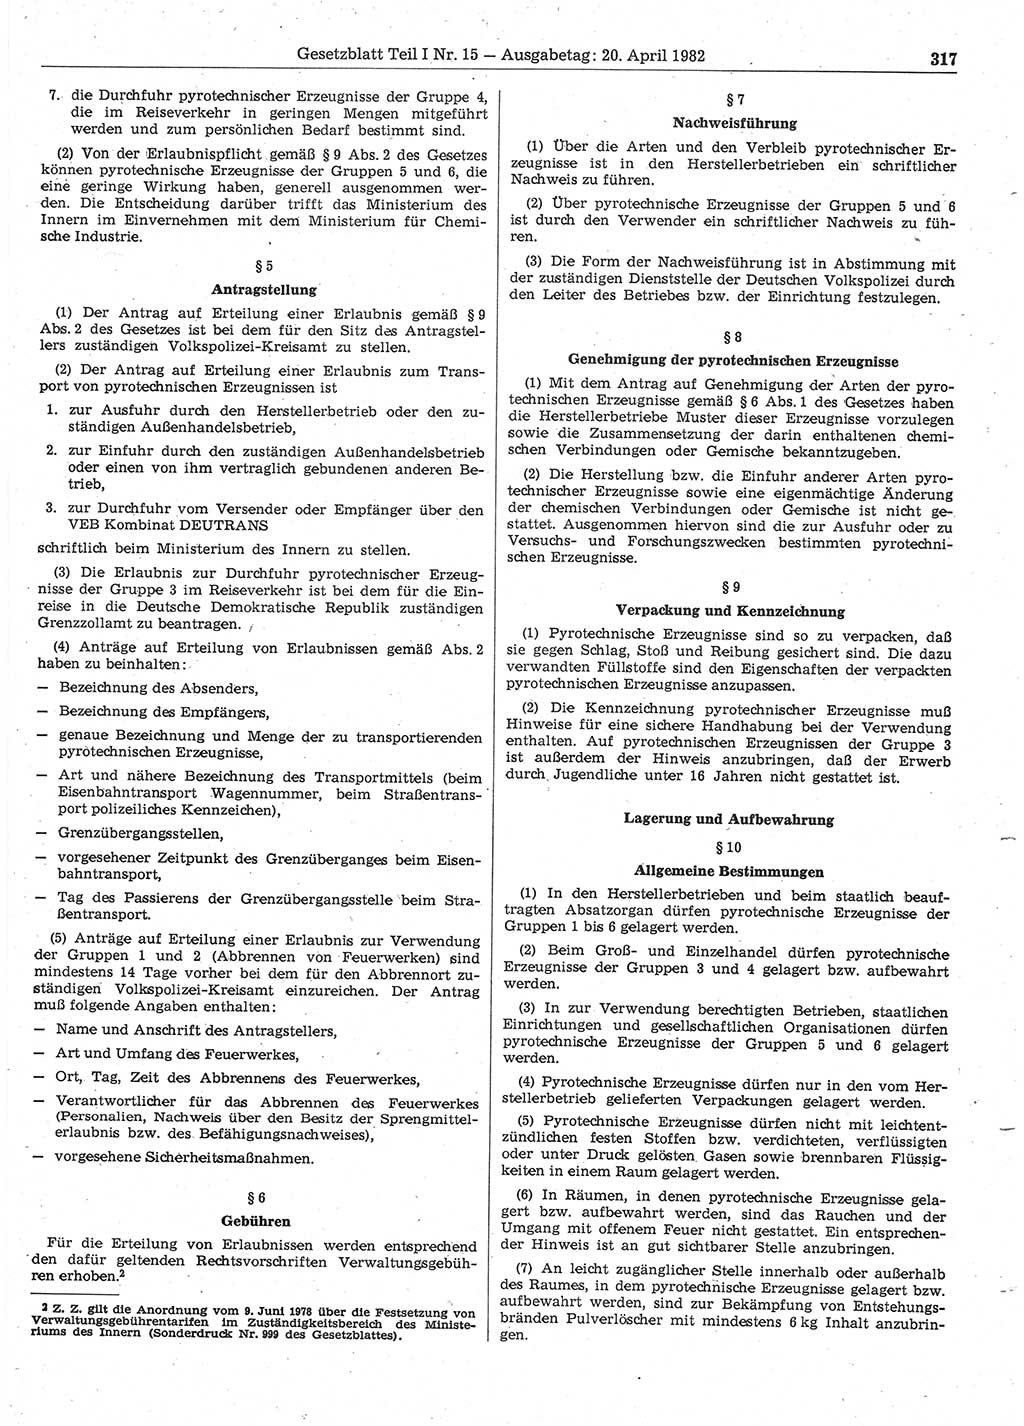 Gesetzblatt (GBl.) der Deutschen Demokratischen Republik (DDR) Teil Ⅰ 1982, Seite 317 (GBl. DDR Ⅰ 1982, S. 317)